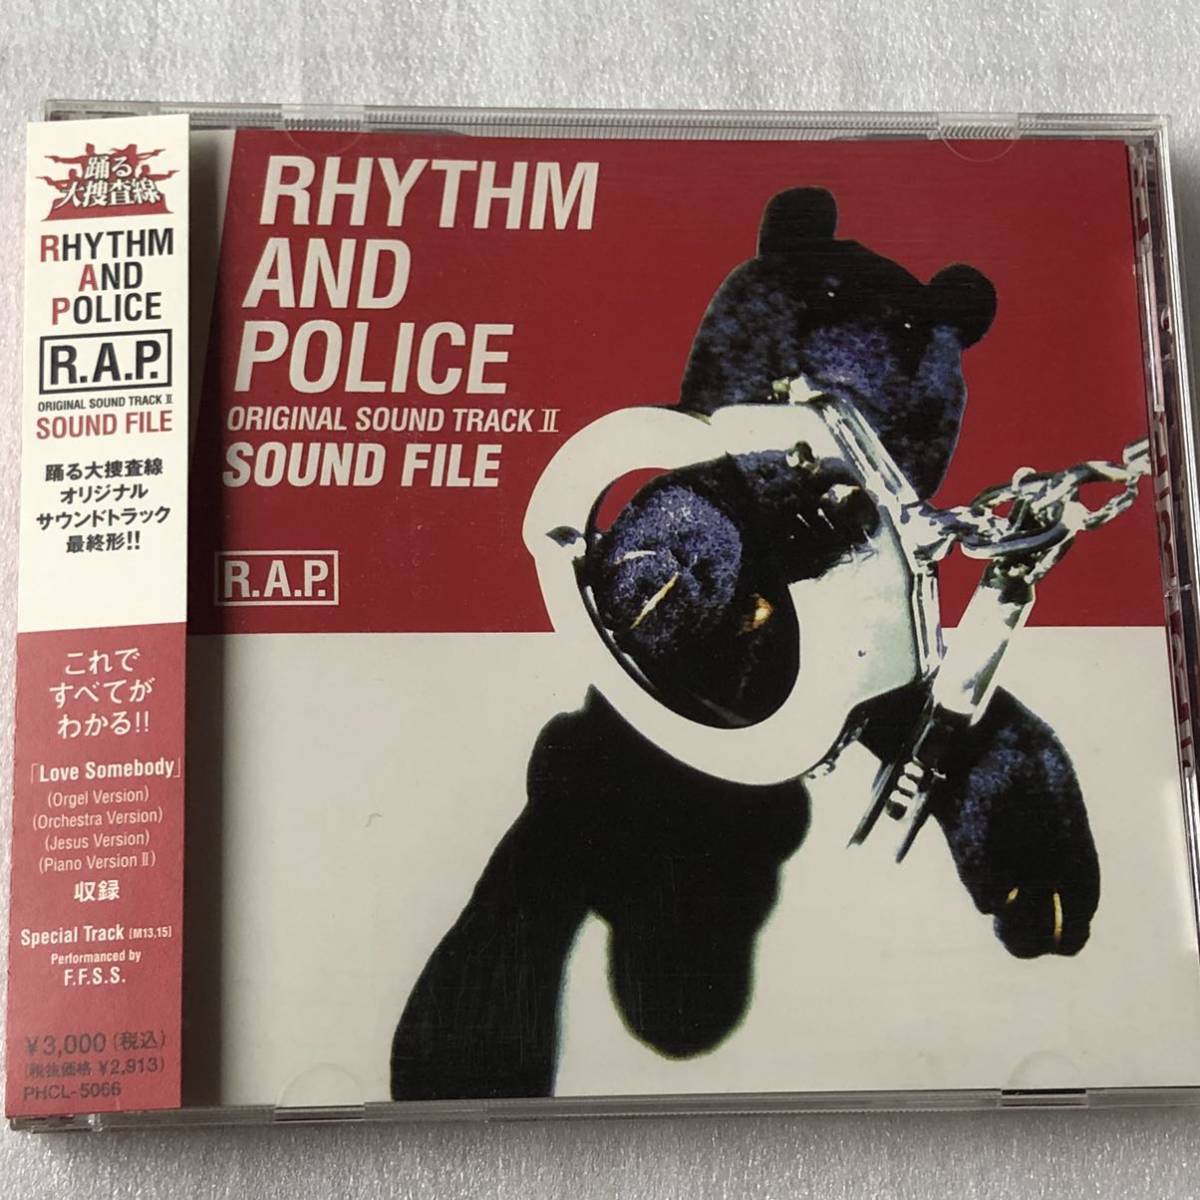 中古CD RHYTHM AND POLICE ORIGINAL SOUND TRACK II SOUND FILE (1997年)_画像1